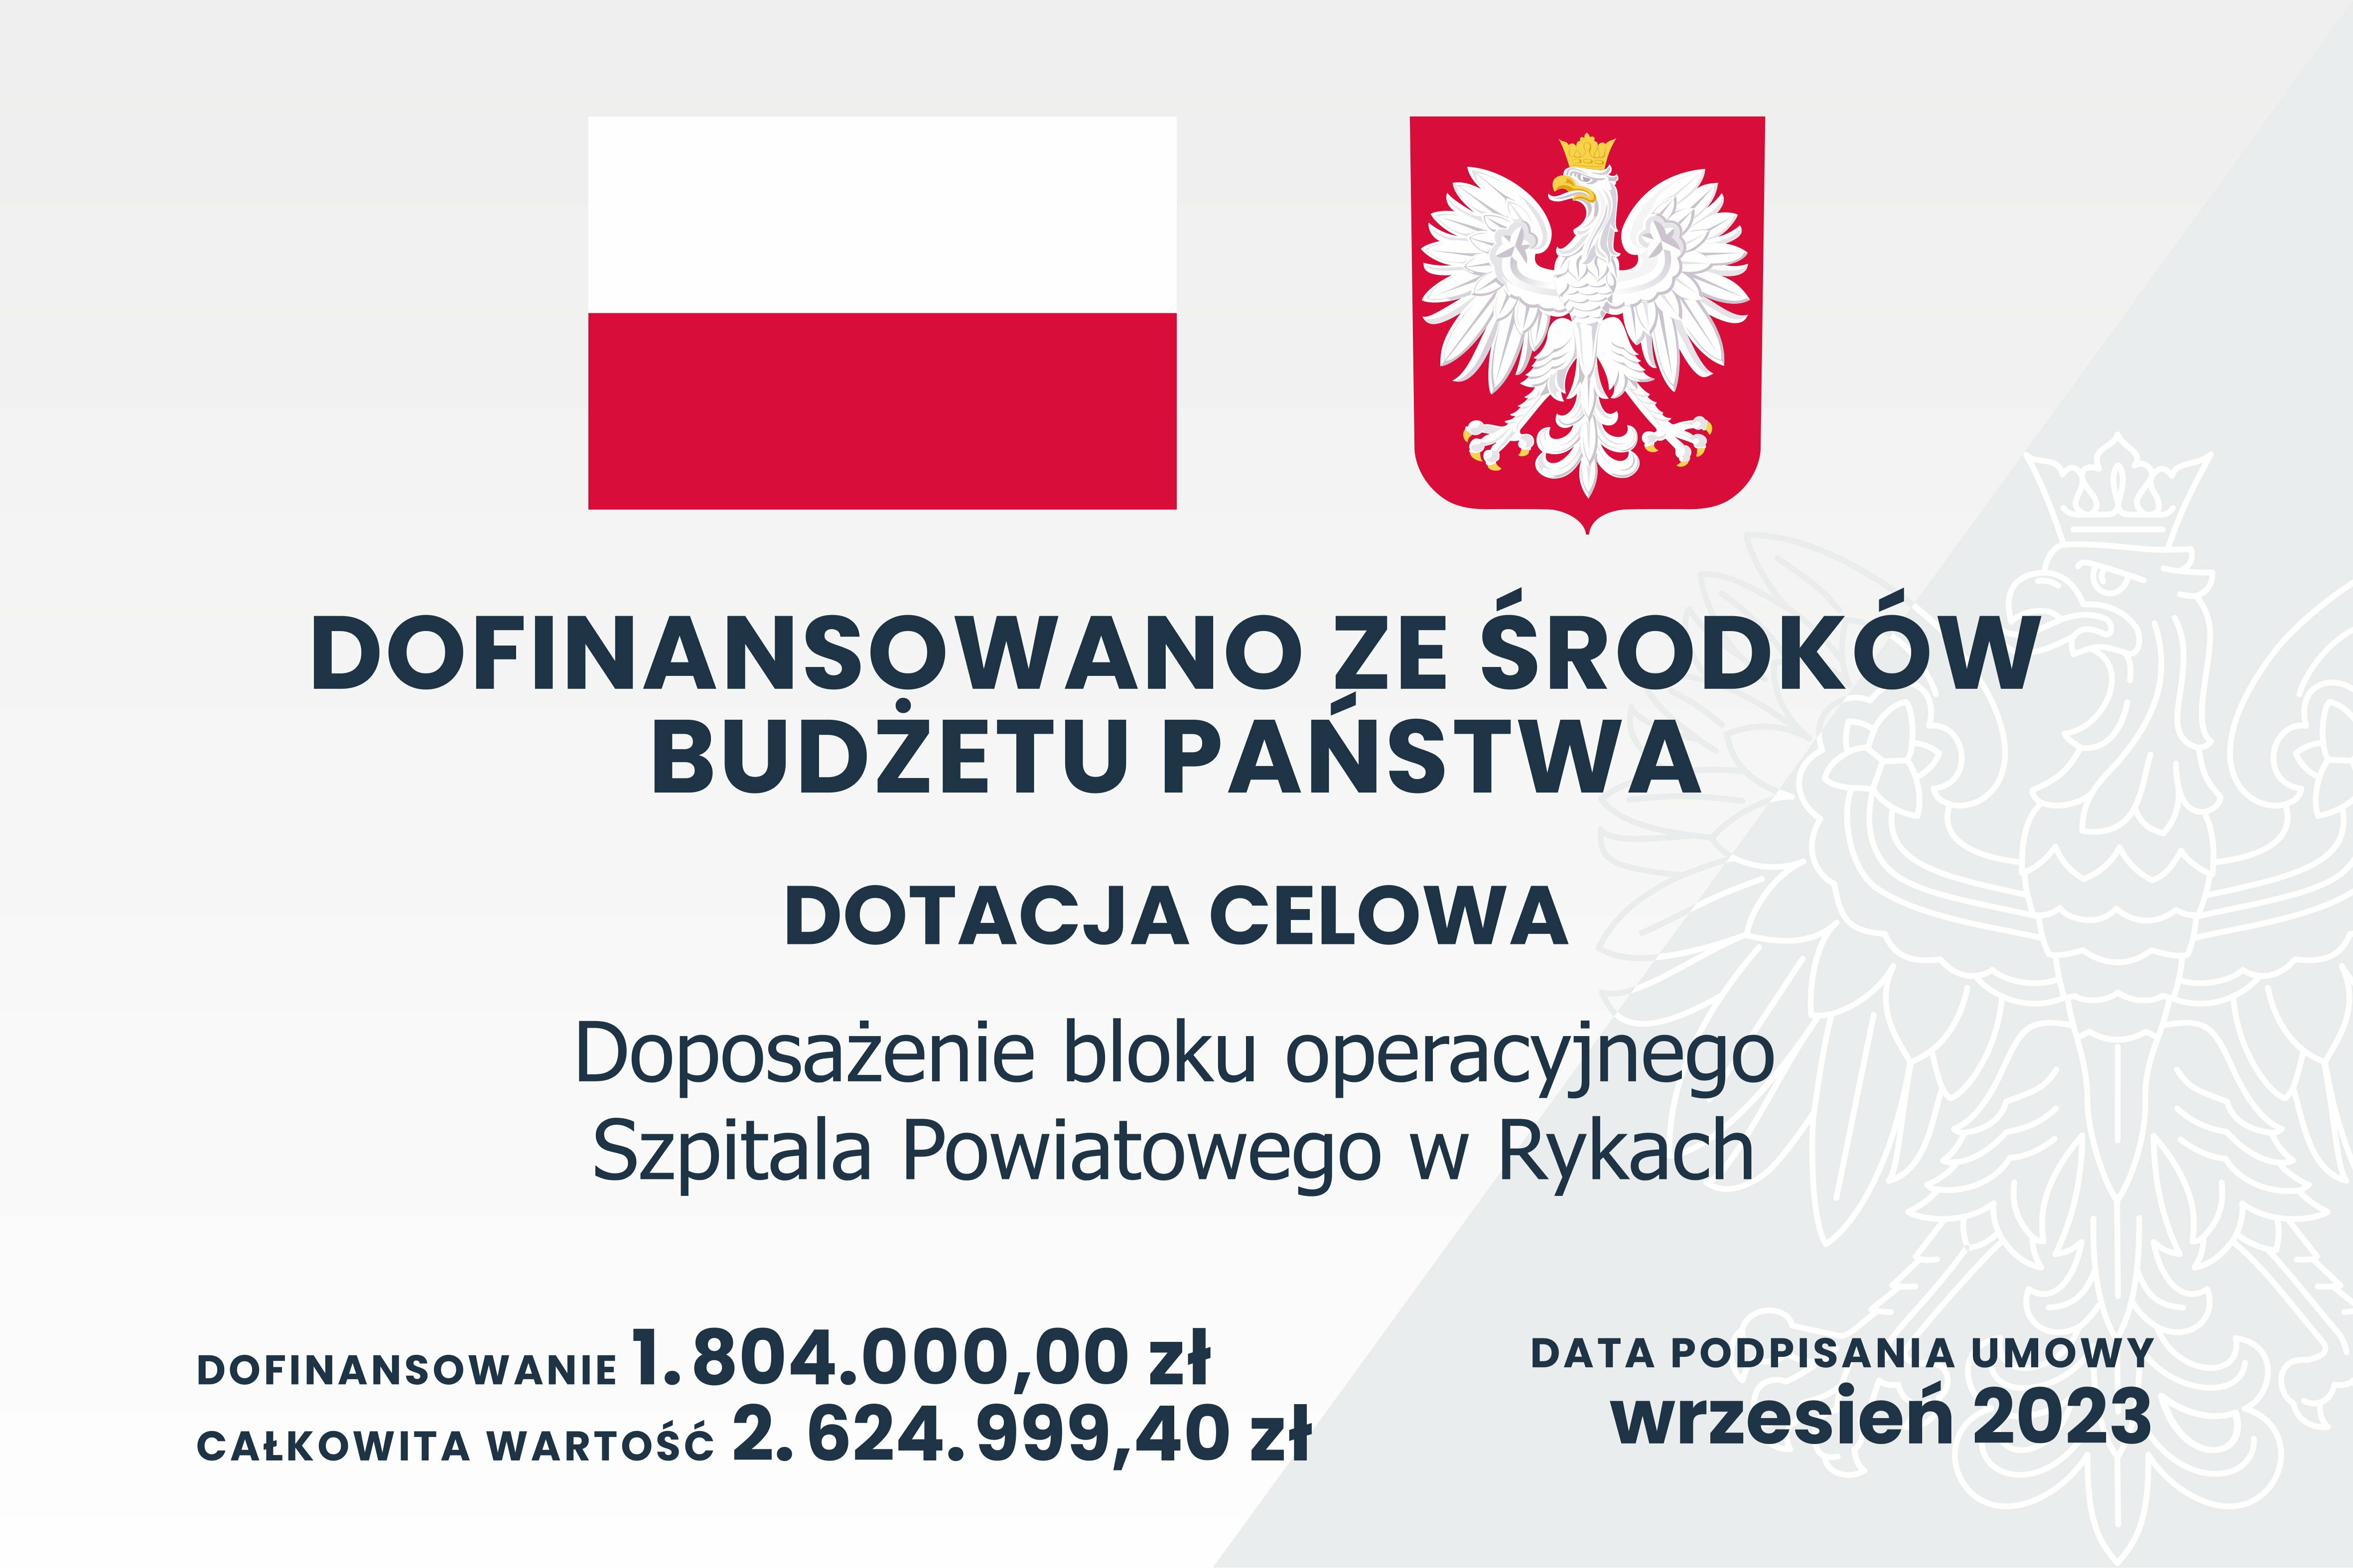 Infografika z polskimi symbolami narodowymi, informująca o dofinansowaniu budżetu państwa na wyposażenie bloku operacyjnego Szpitala Powiatowego w Rykach.